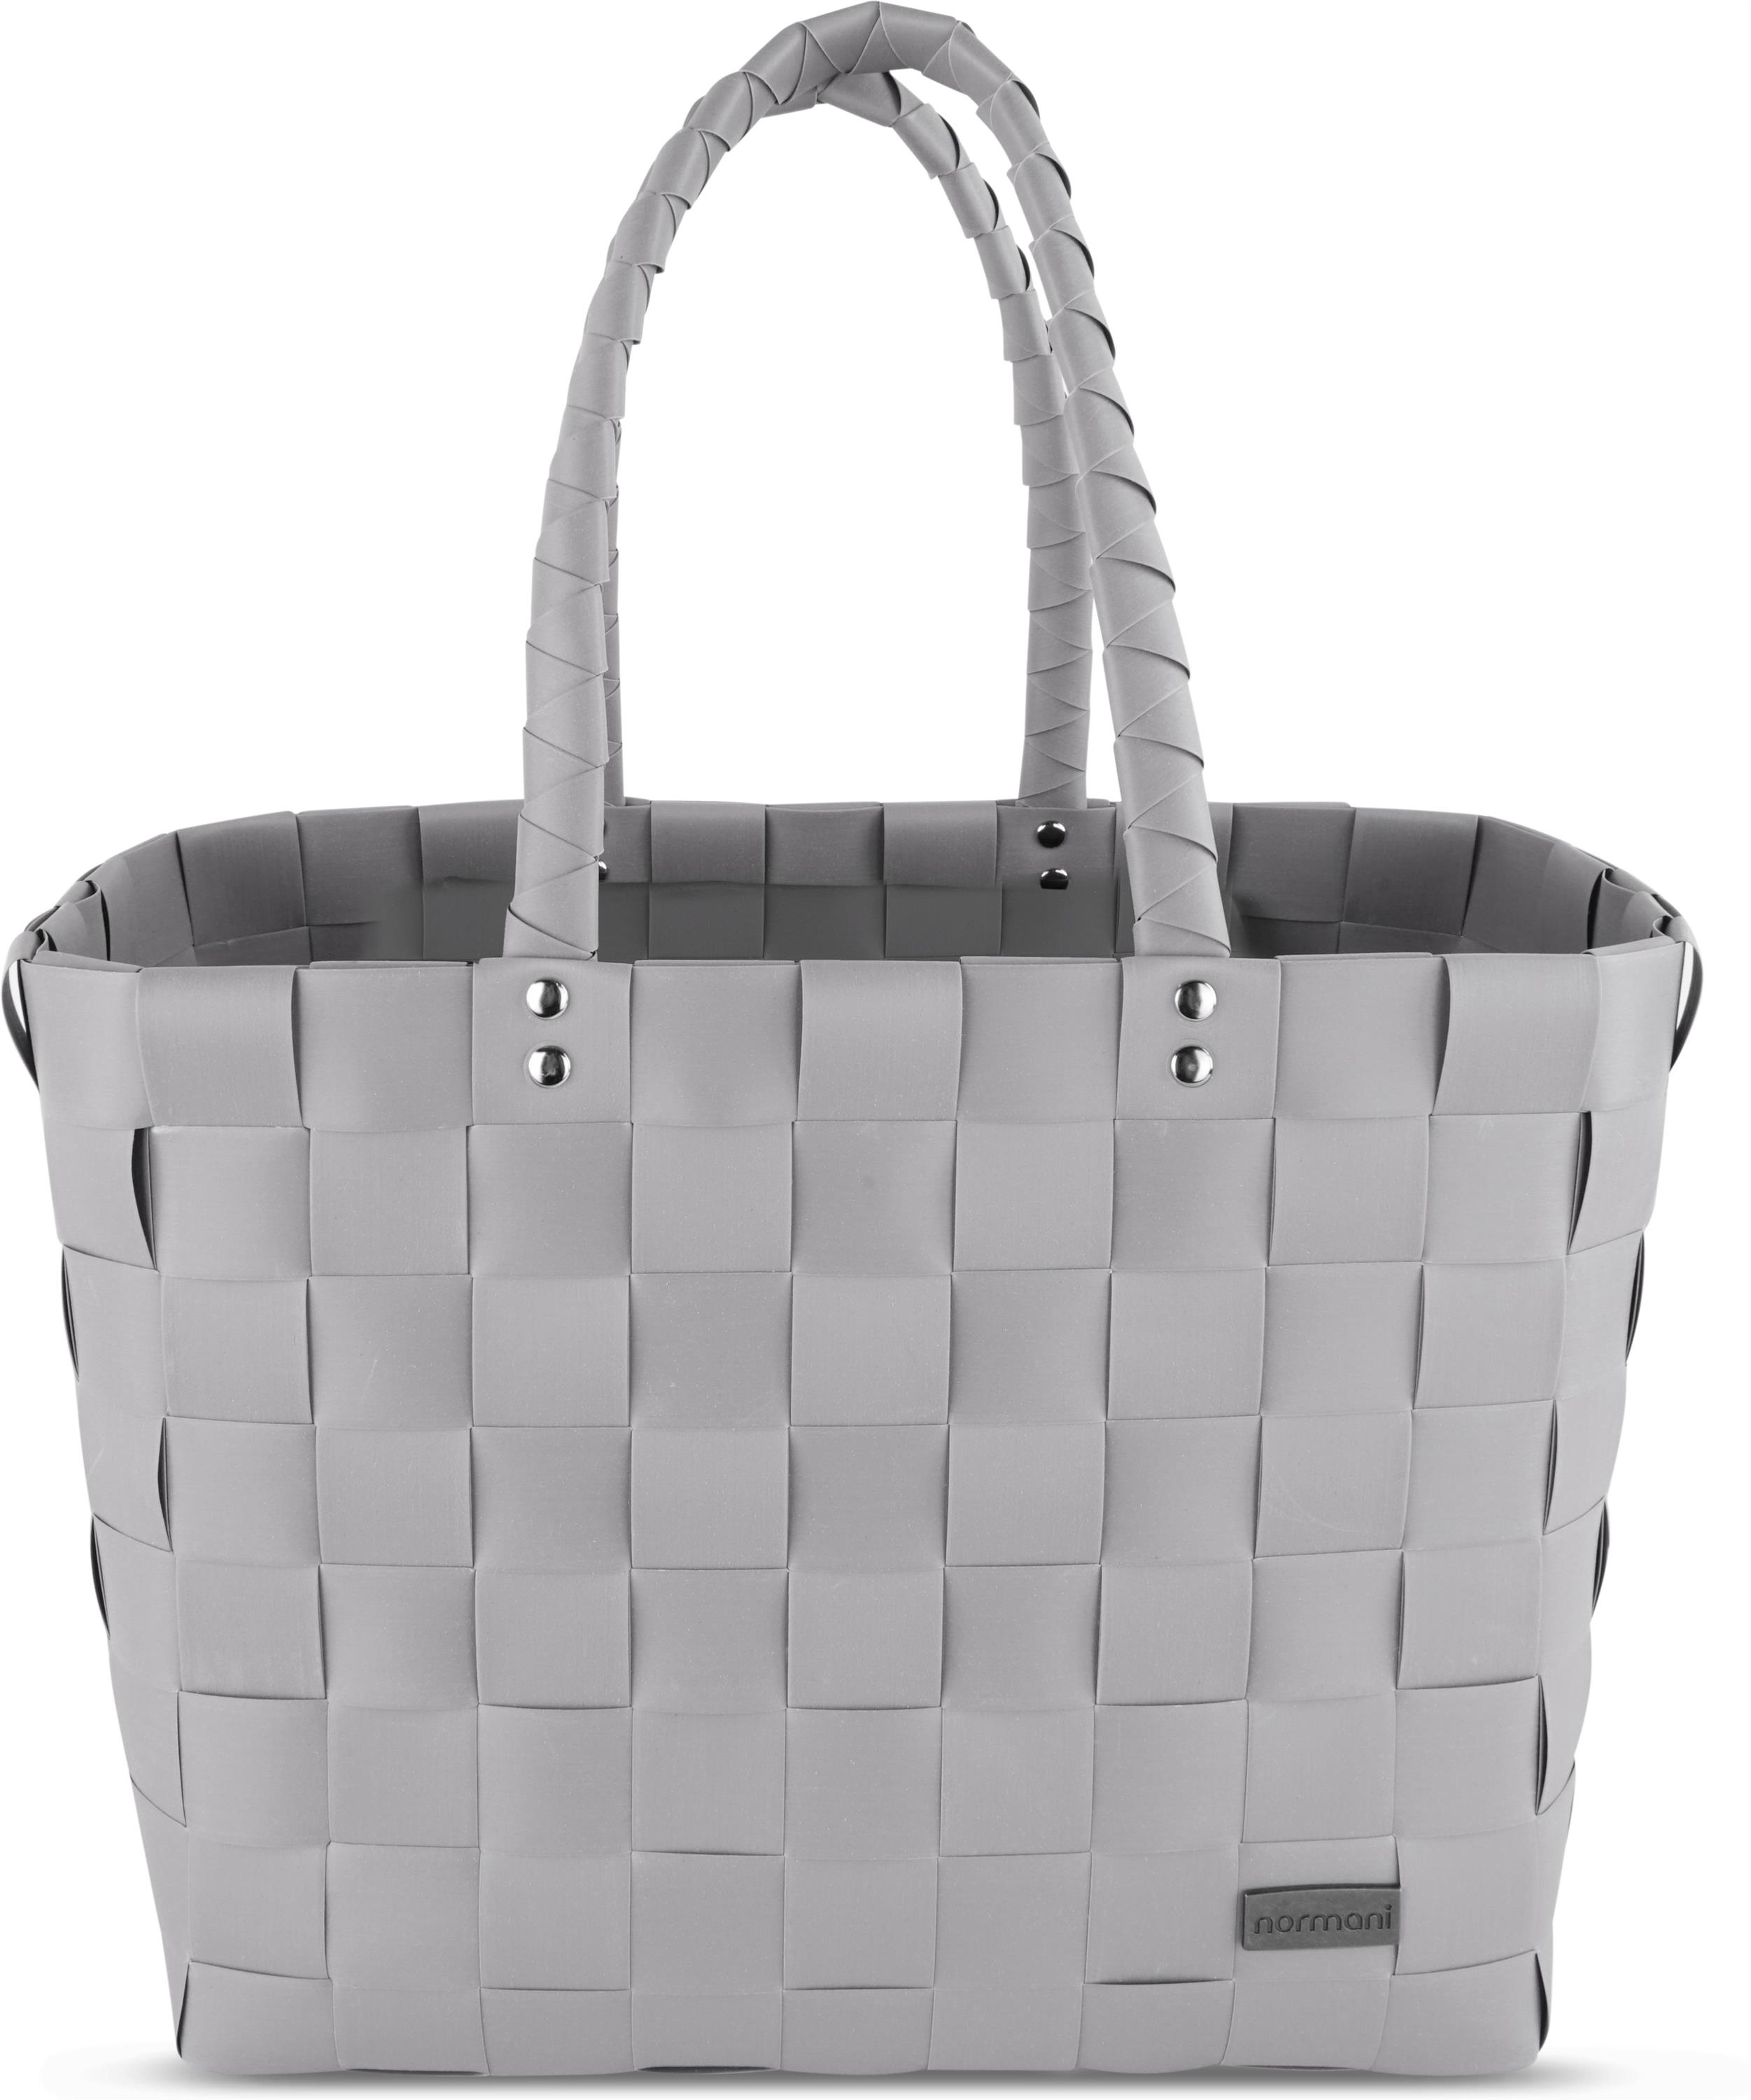 Сумка шоппер normani Einkaufskorb Einkaufstasche aus Kunststoff, светло-серый